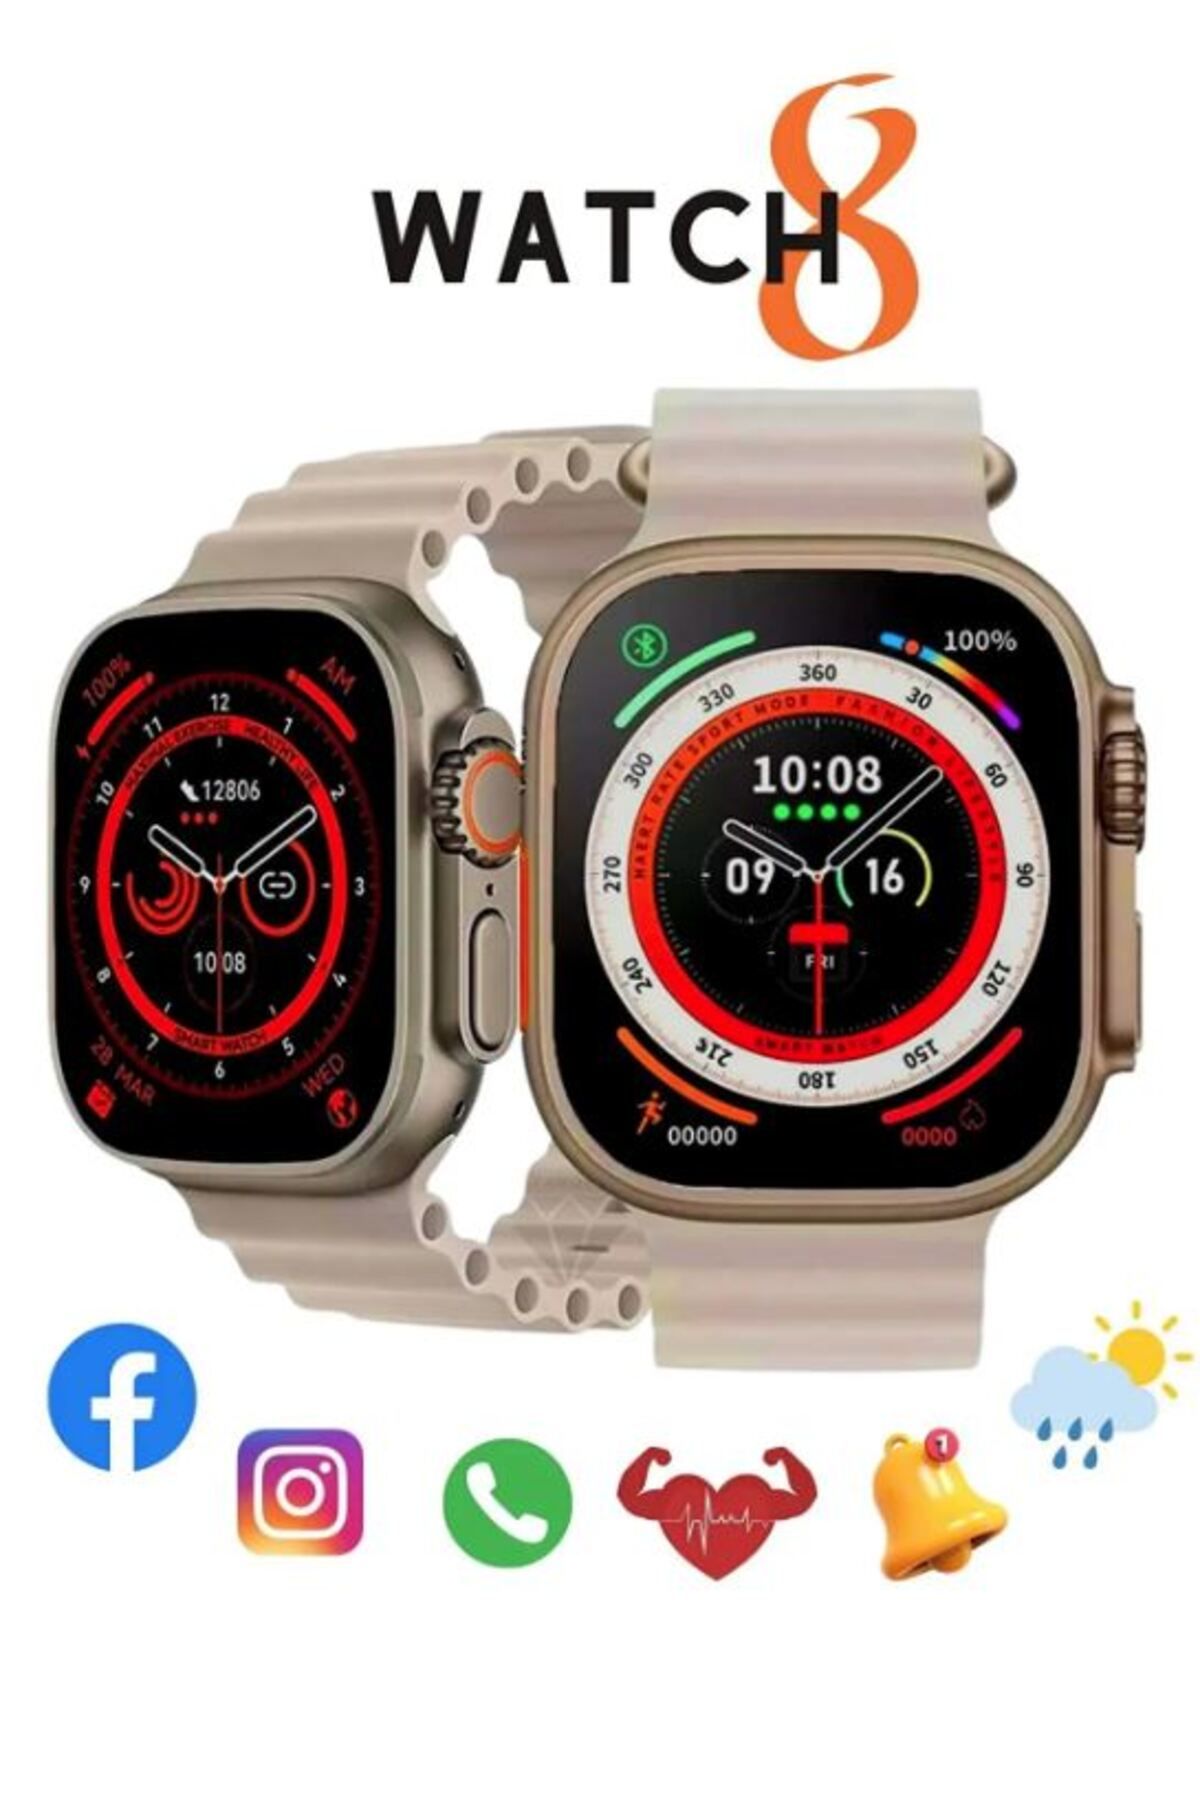 Favors Watch 8 Ultra Gri Akıllı Saat Arama Yapma, Sensörlü, Spor Mod, Bildirim, Türkçe Smart Watch